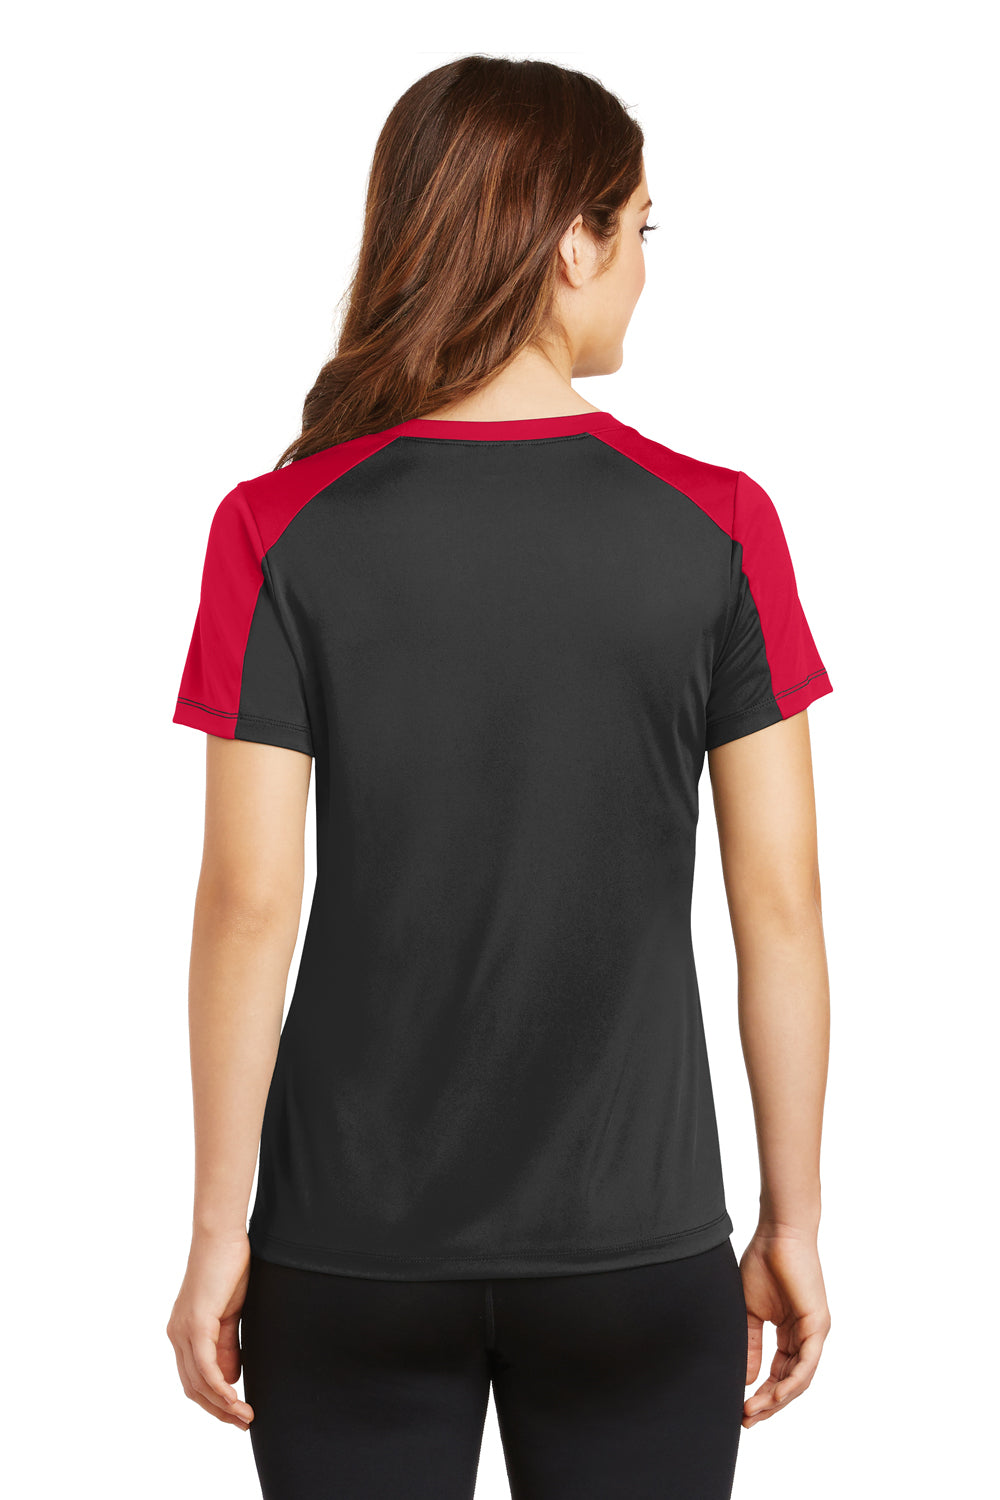 Sport-Tek LST354 Womens Competitor Moisture Wicking Short Sleeve V-Neck T-Shirt Black/Red Back